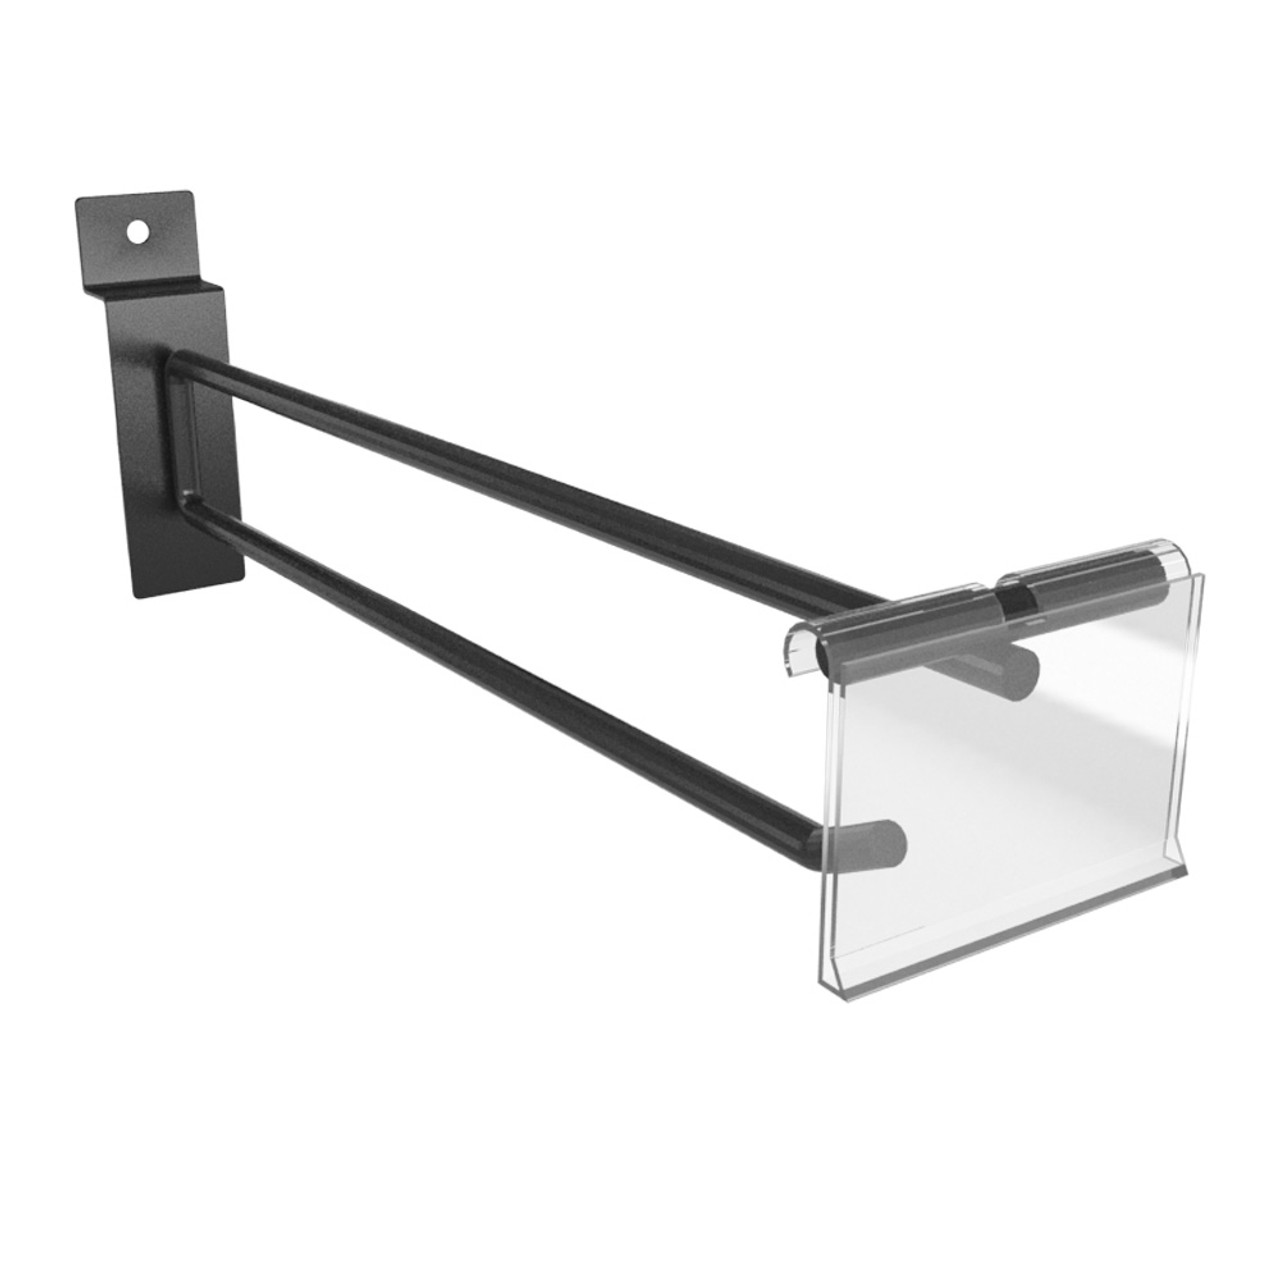 SlatSecure Slatwall Display Peg Hook With Scanner Tag Holder, Black 6D